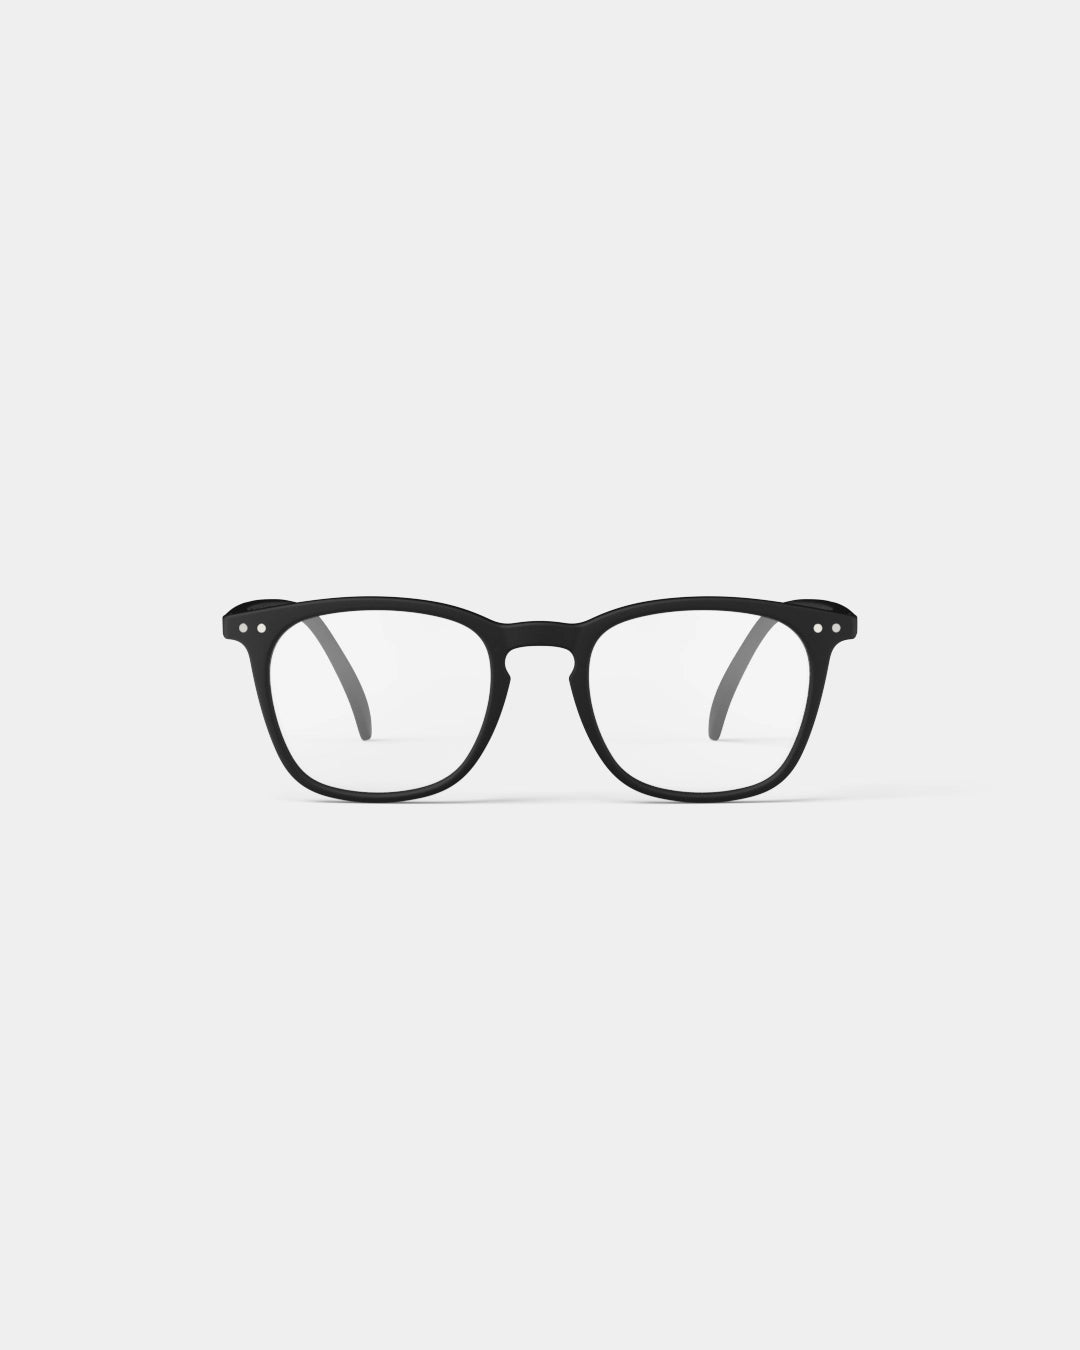 IZIPIZI | Reading Glasses #E